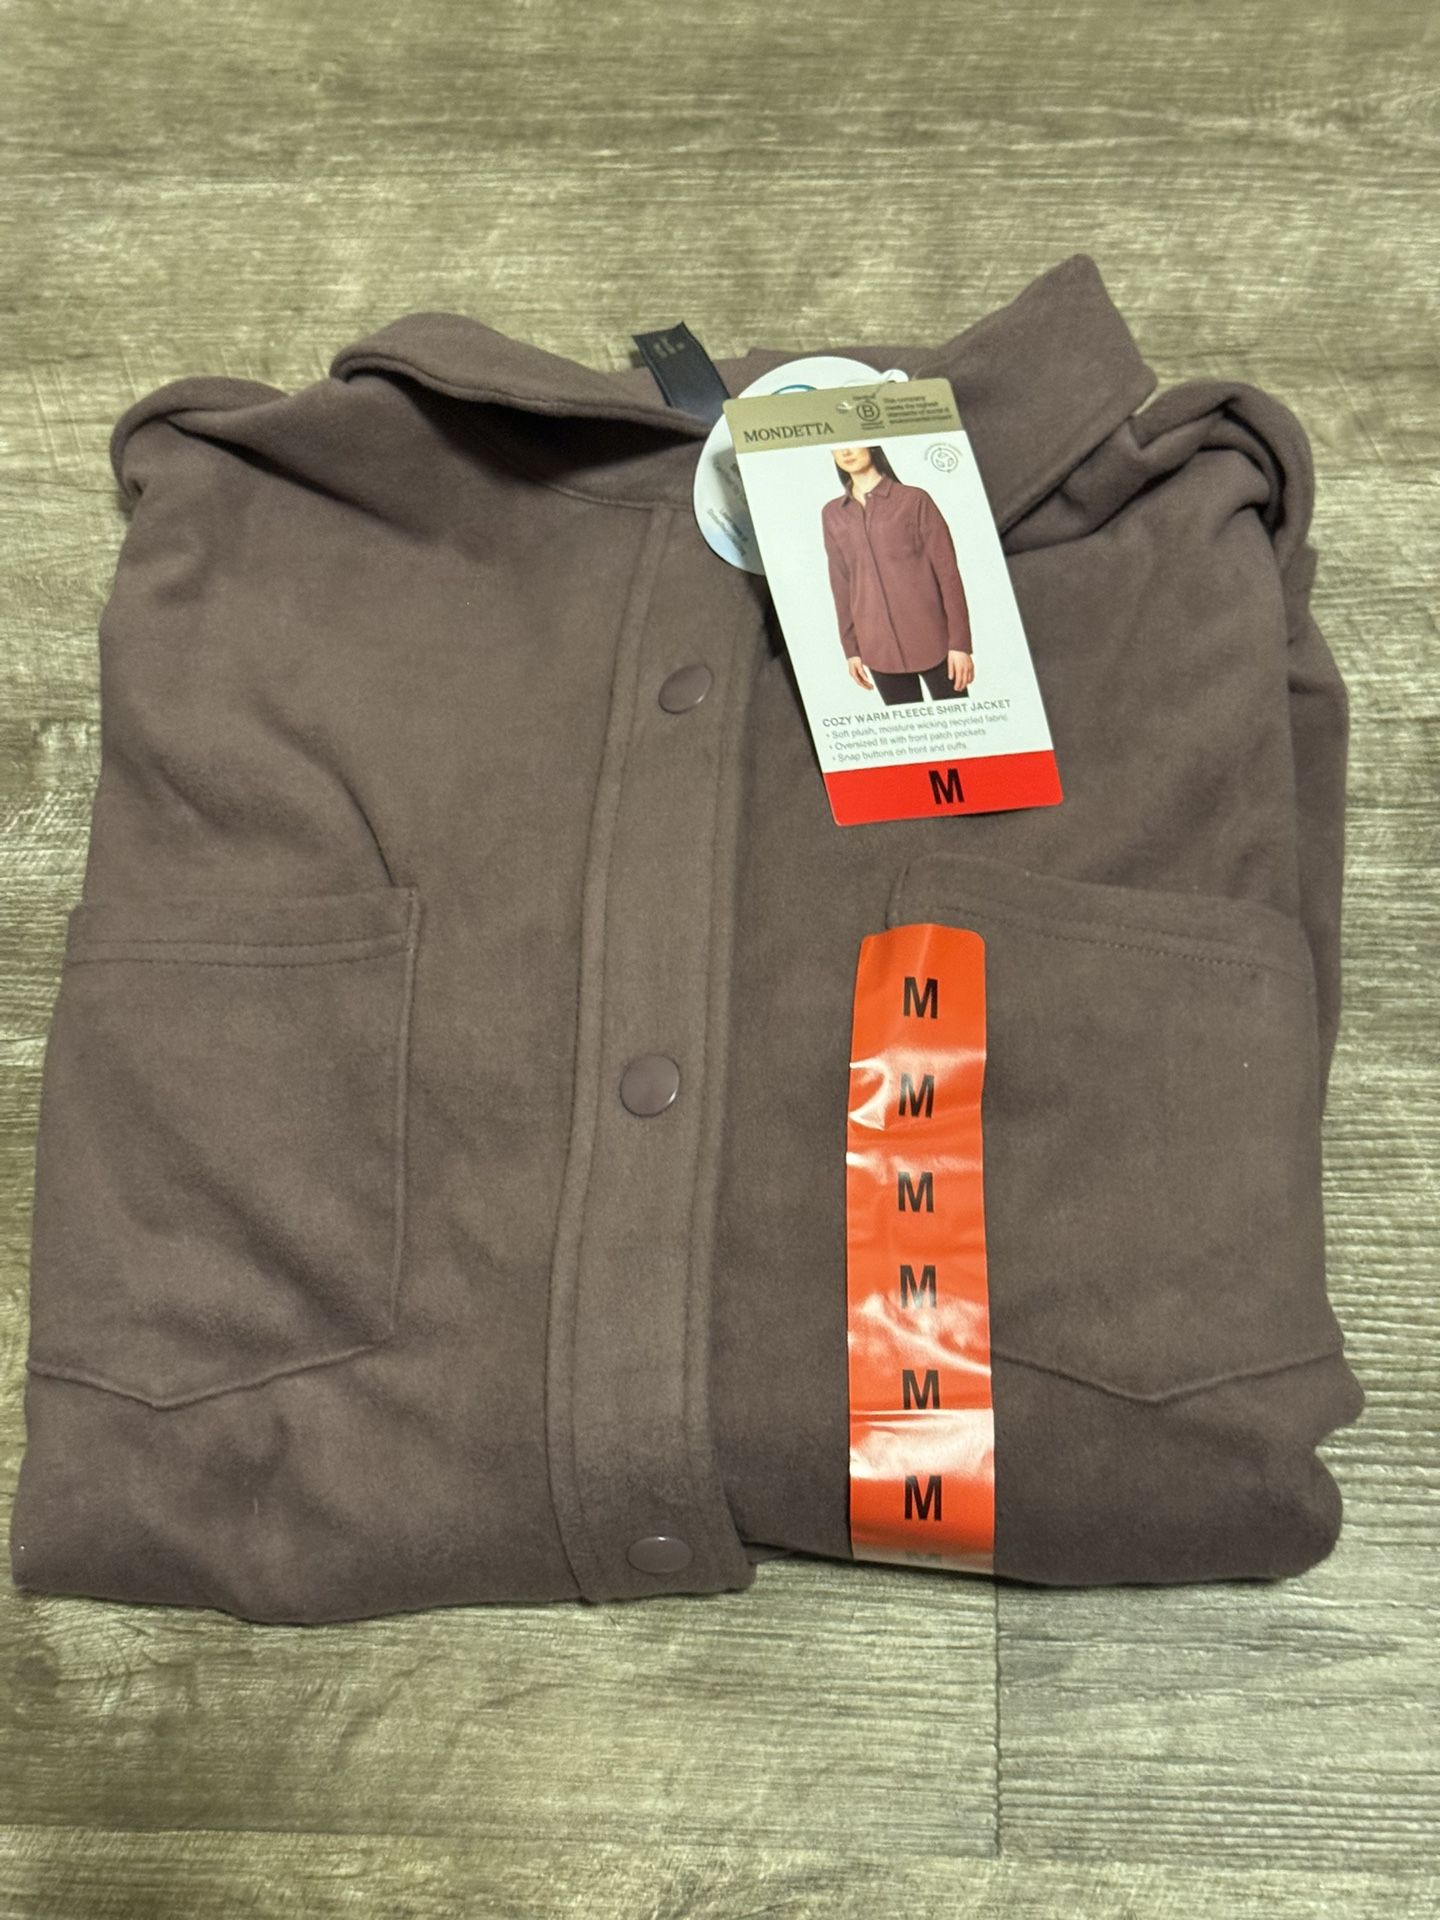 New Cozy Warm Fleece Shirt Jacket Size Medium 